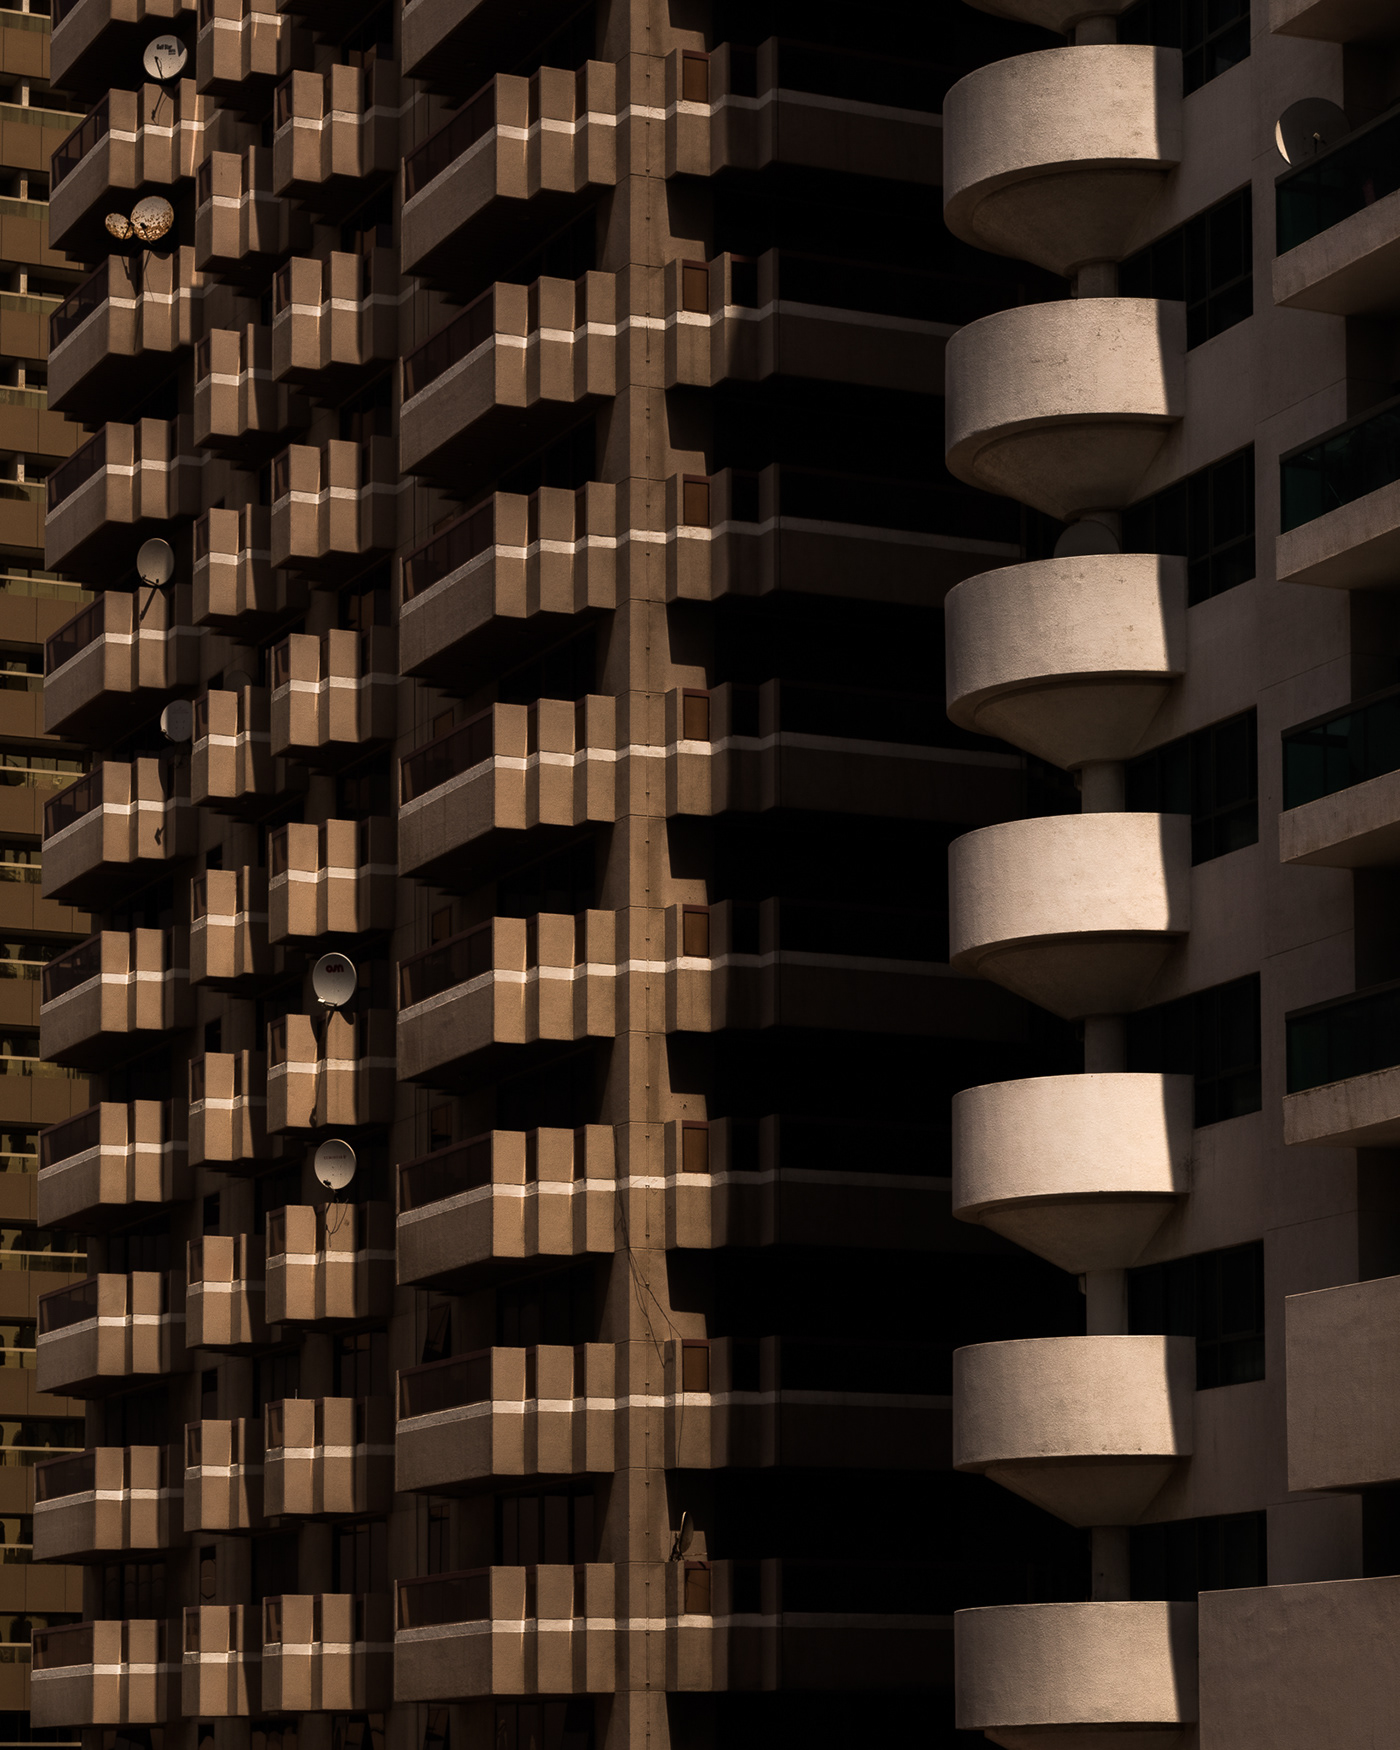 architecture city buildings dubai grids skyscraper UAE night contemporary architecture Photography 